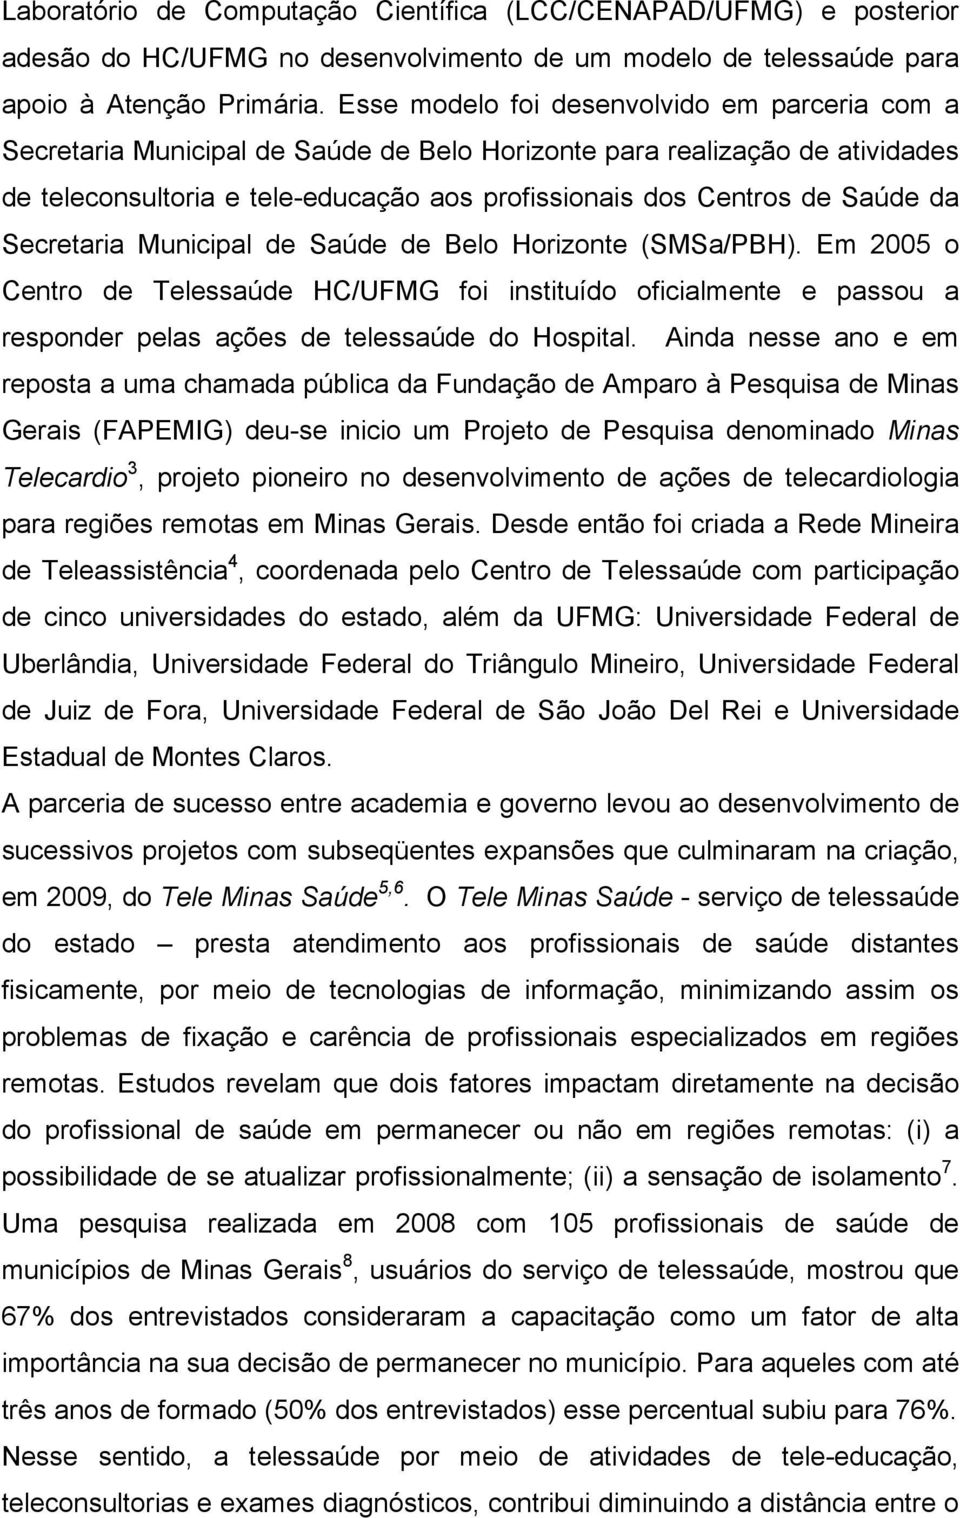 da Secretaria Municipal de Saúde de Belo Horizonte (SMSa/PBH). Em 2005 o Centro de Telessaúde HC/UFMG foi instituído oficialmente e passou a responder pelas ações de telessaúde do Hospital.